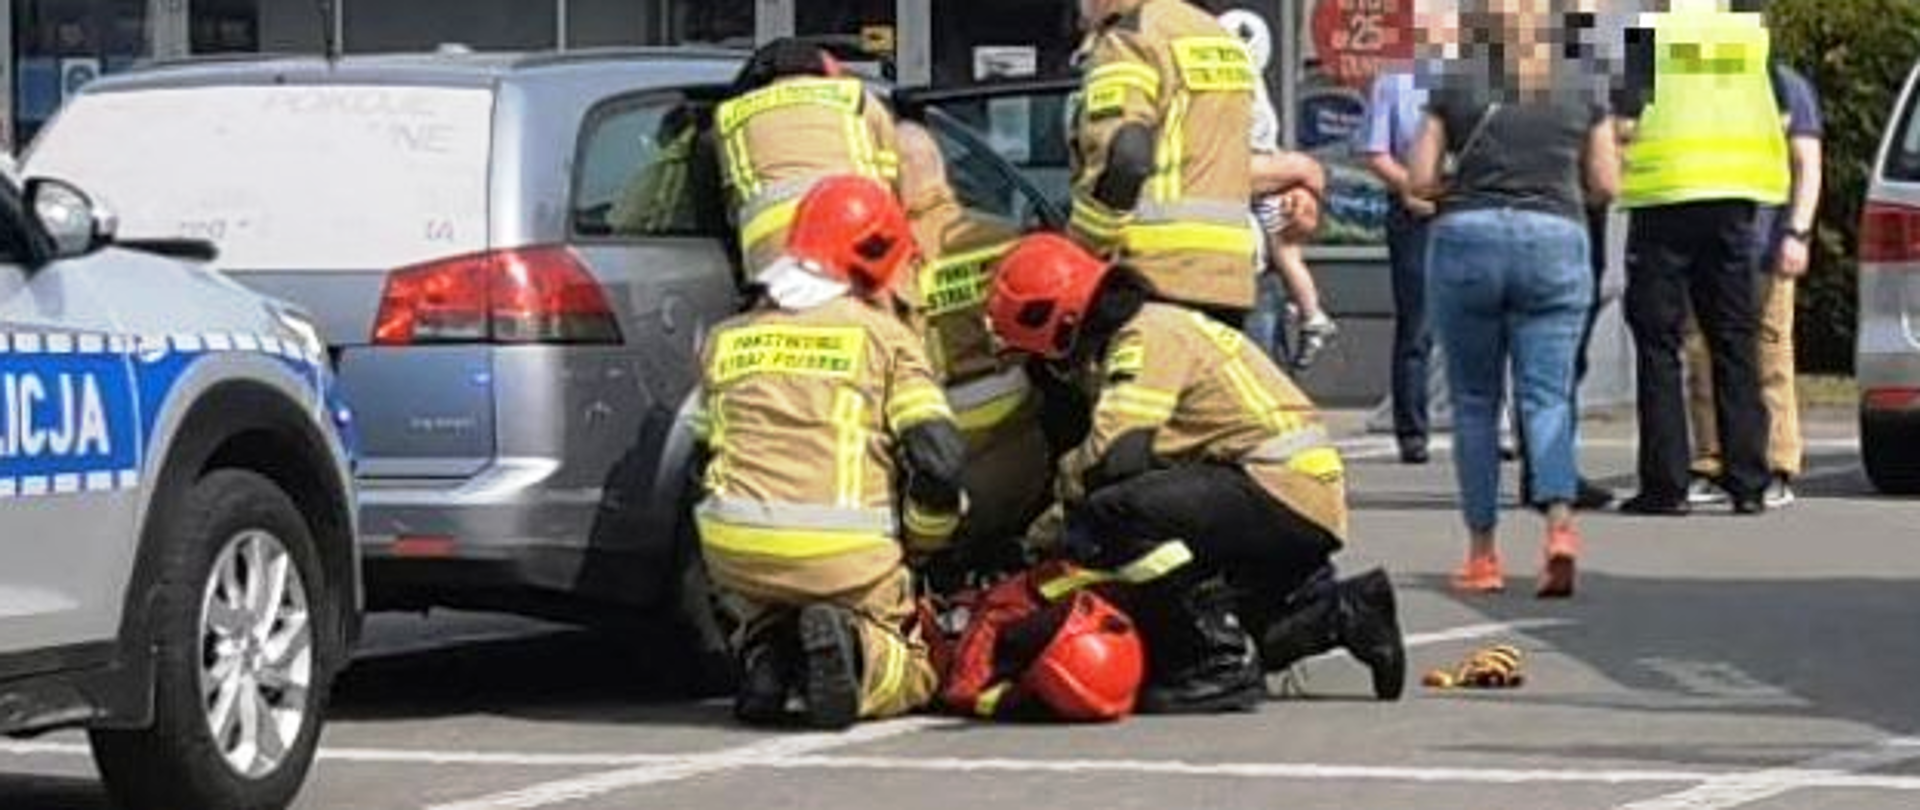 Strażacy udzielający pierwszej pomocy kobiecie znajdującej się w samochodzie osobowym, na pierwszym planie przód radiowozu policyjnego, w oddali policjant i osoby cywilne.